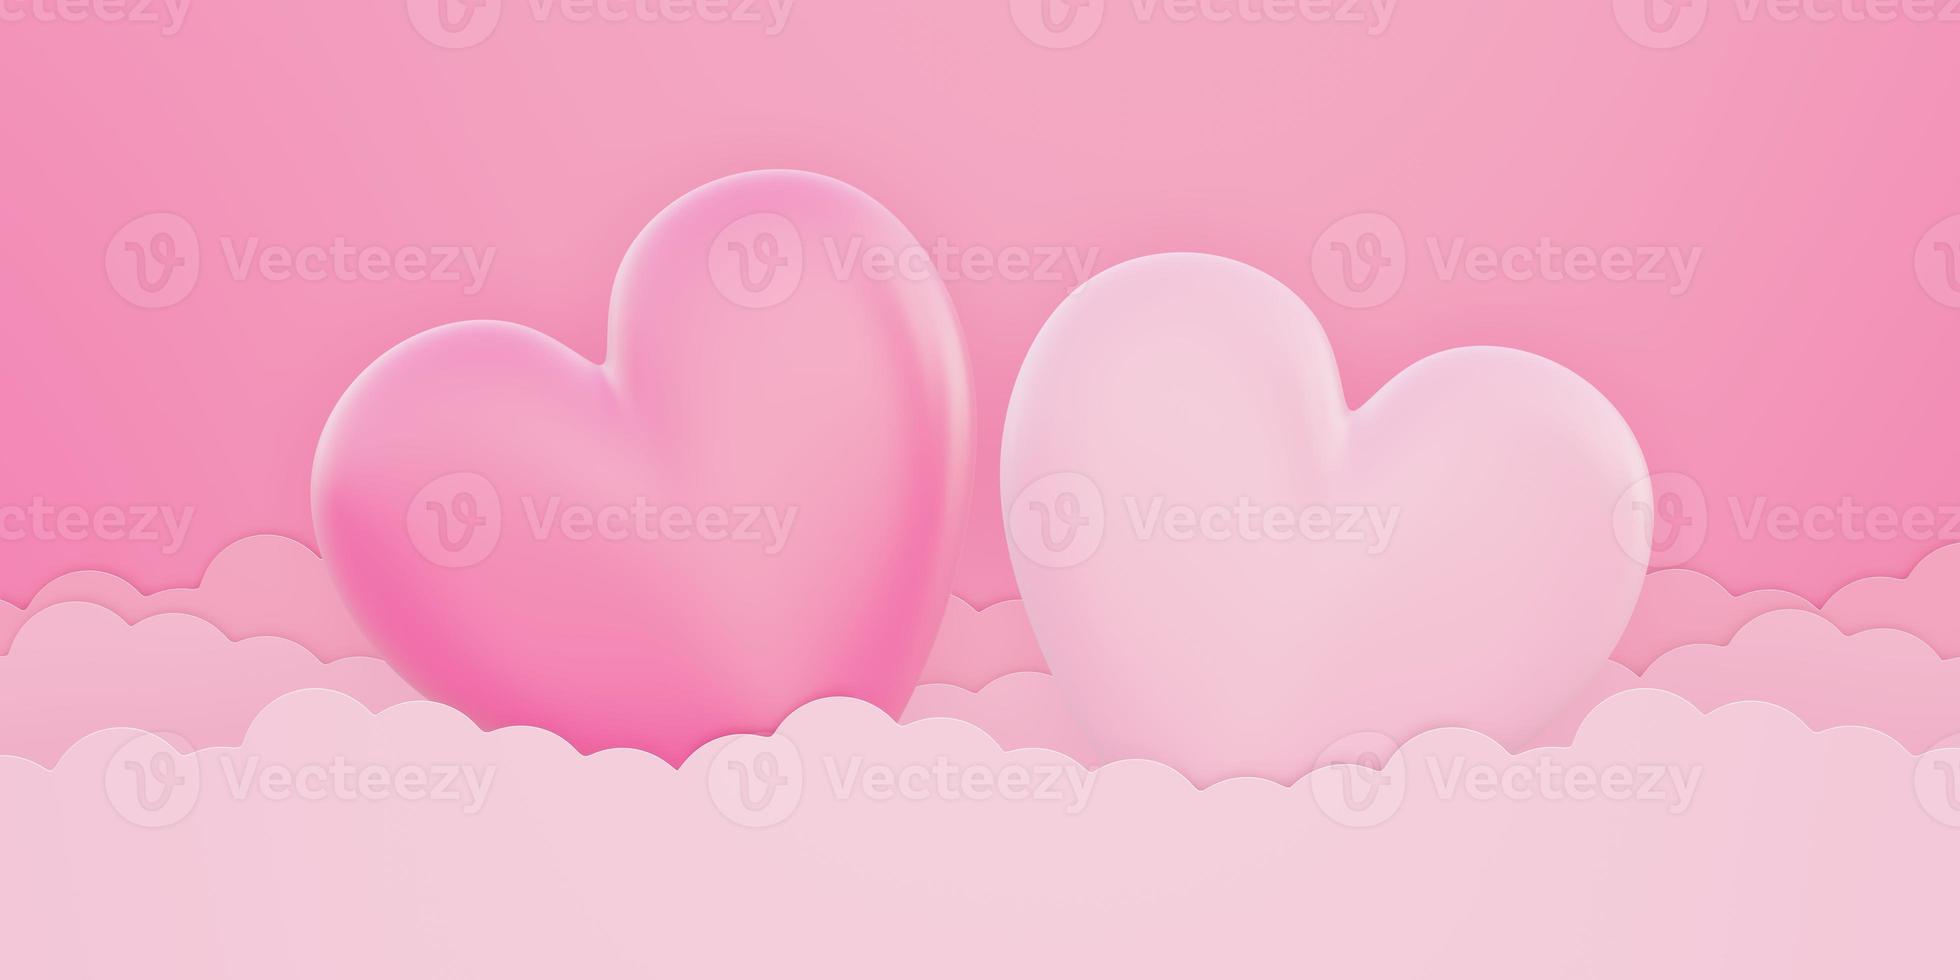 dia dos namorados, fundo do conceito de amor, formato de coração 3d rosa e branco no céu foto